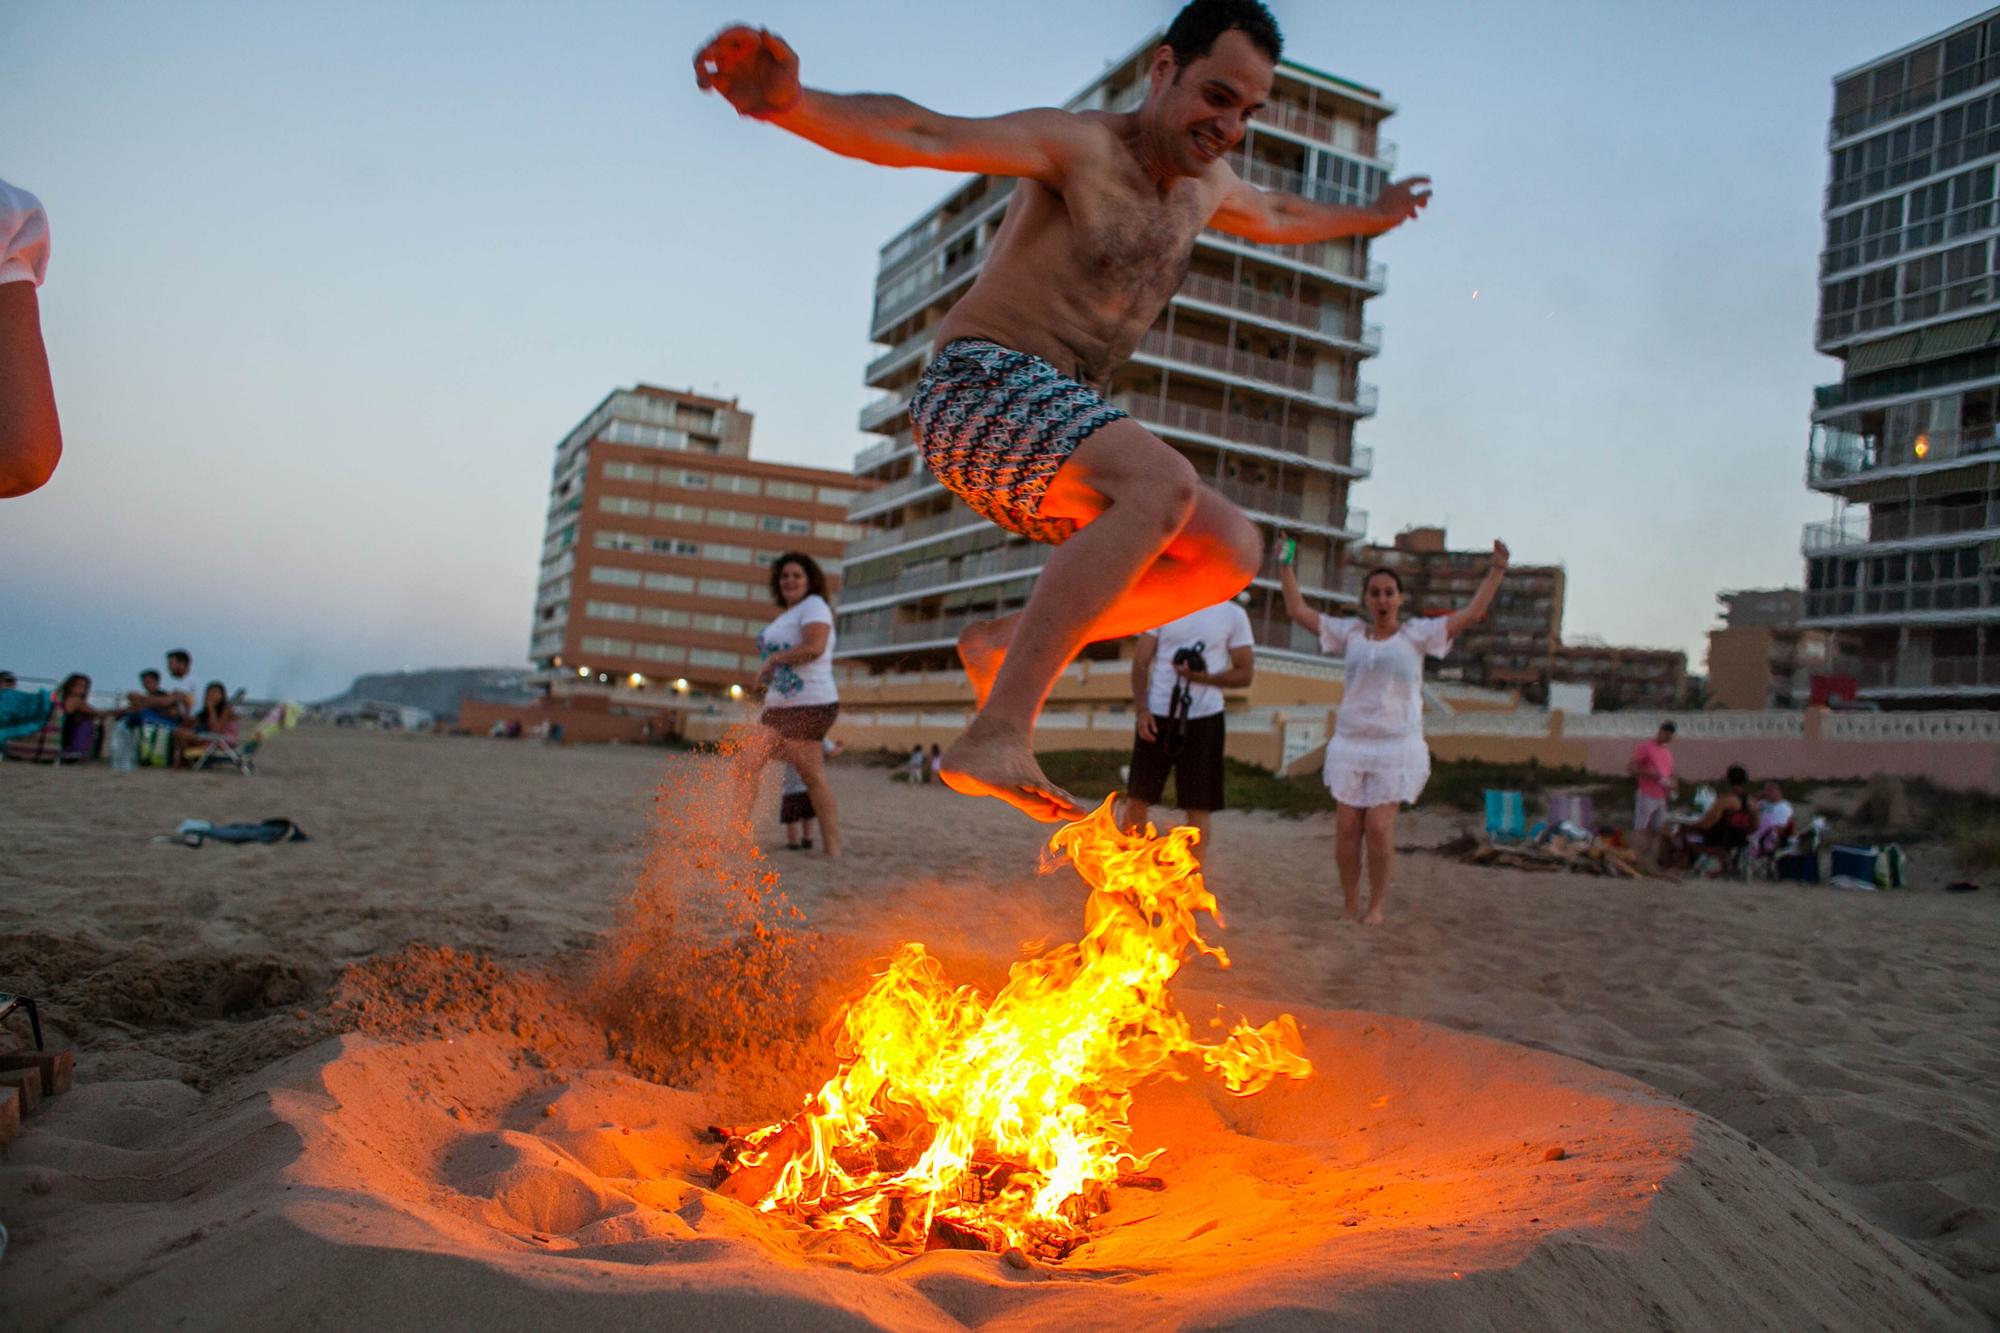 La noche del 23 de junio se prenden cientos de hogueras en las playas para celebrar la noche de San Juan.